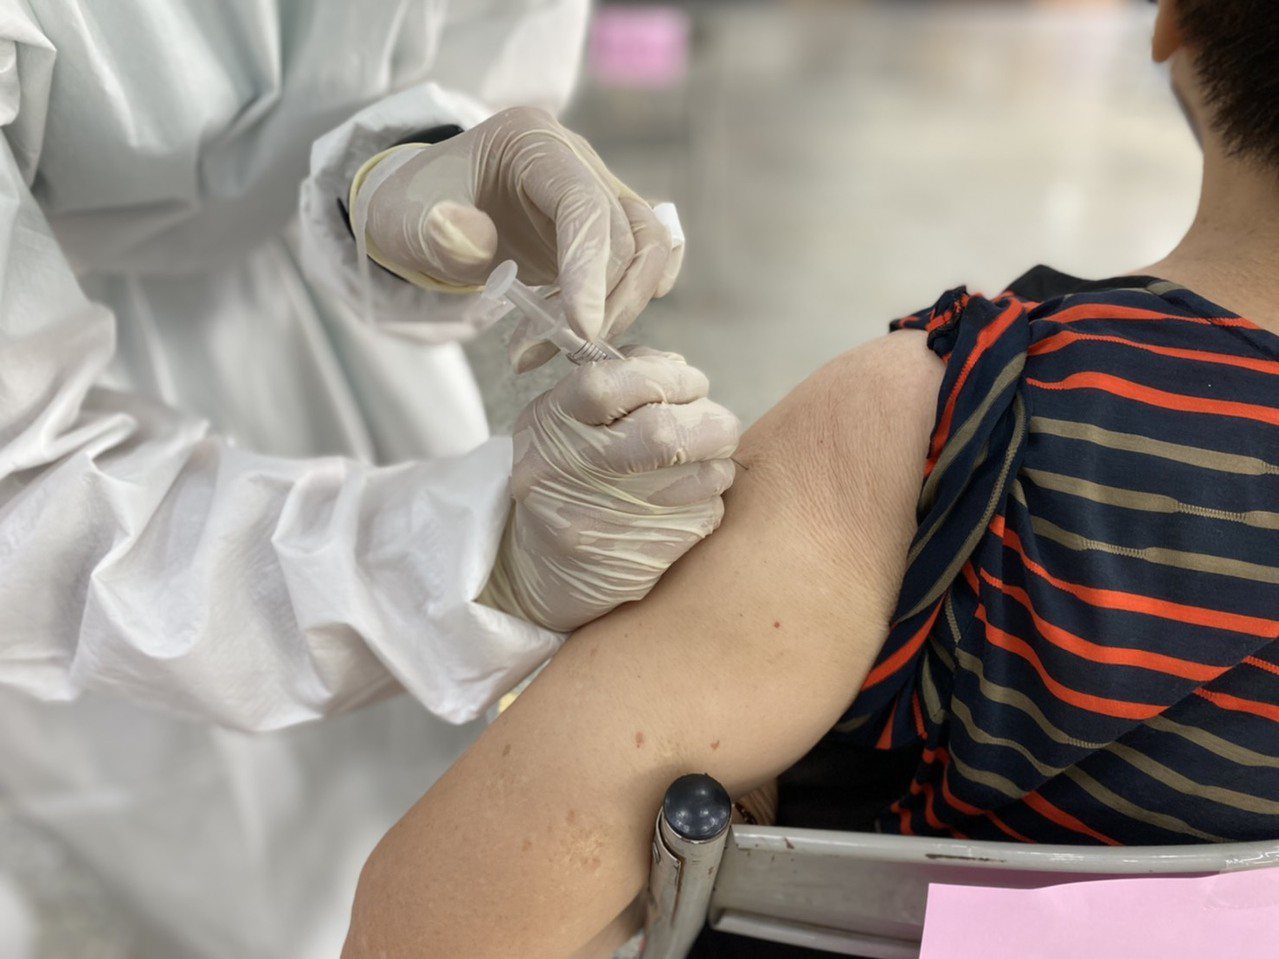 高端施打在即，然而國內也有一批85歲長者已施打過第一劑疫苗滿十週，準備施打第二劑疫苗。